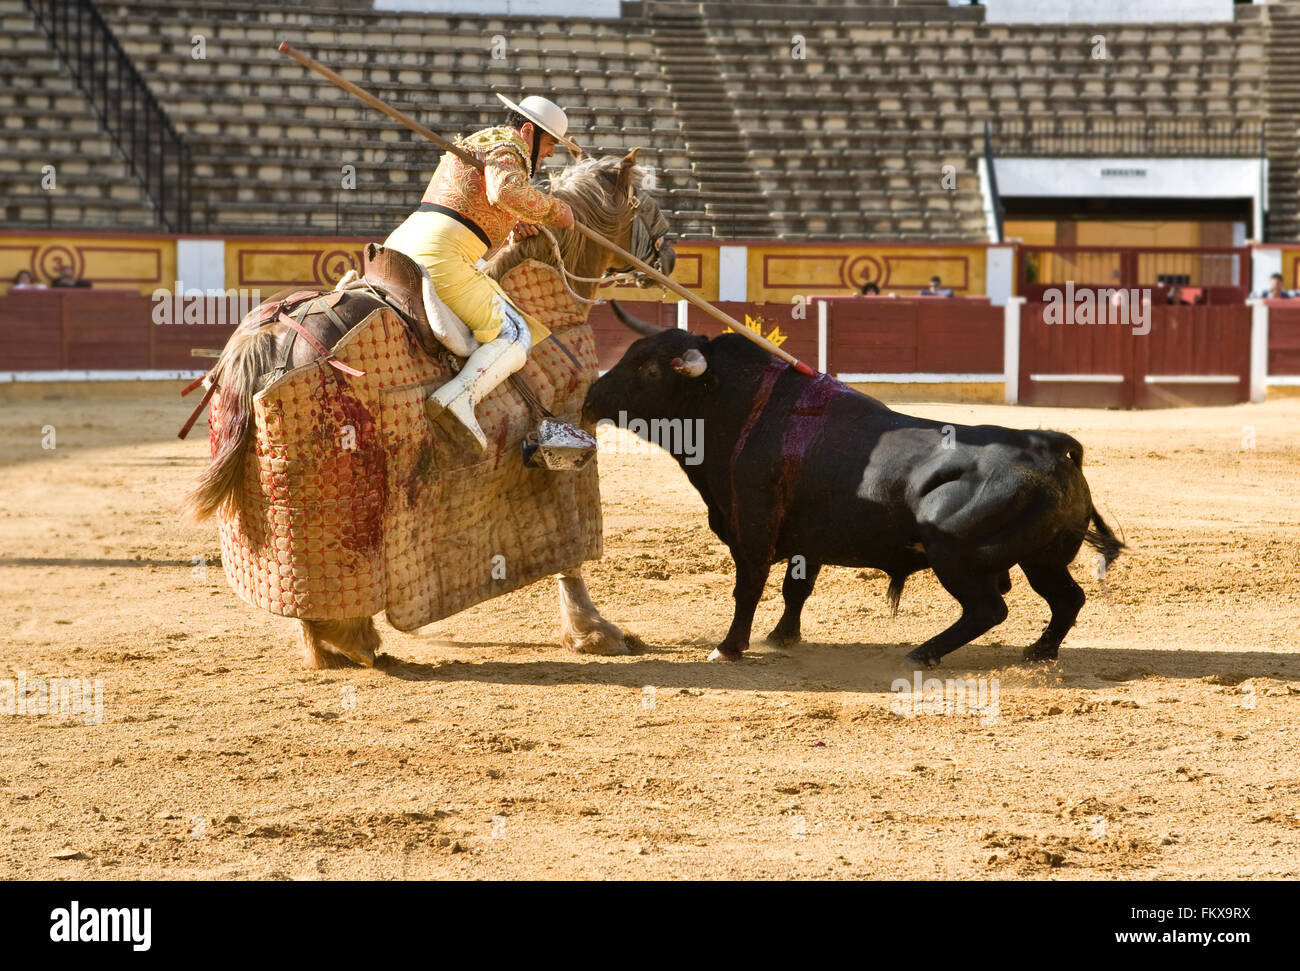 Badajoz, Espagne - 11 mai : Formation corrida à huis clos, le 11 mai 2010 à Badajoz, Espagne. La lancer en blessant le taureau Banque D'Images